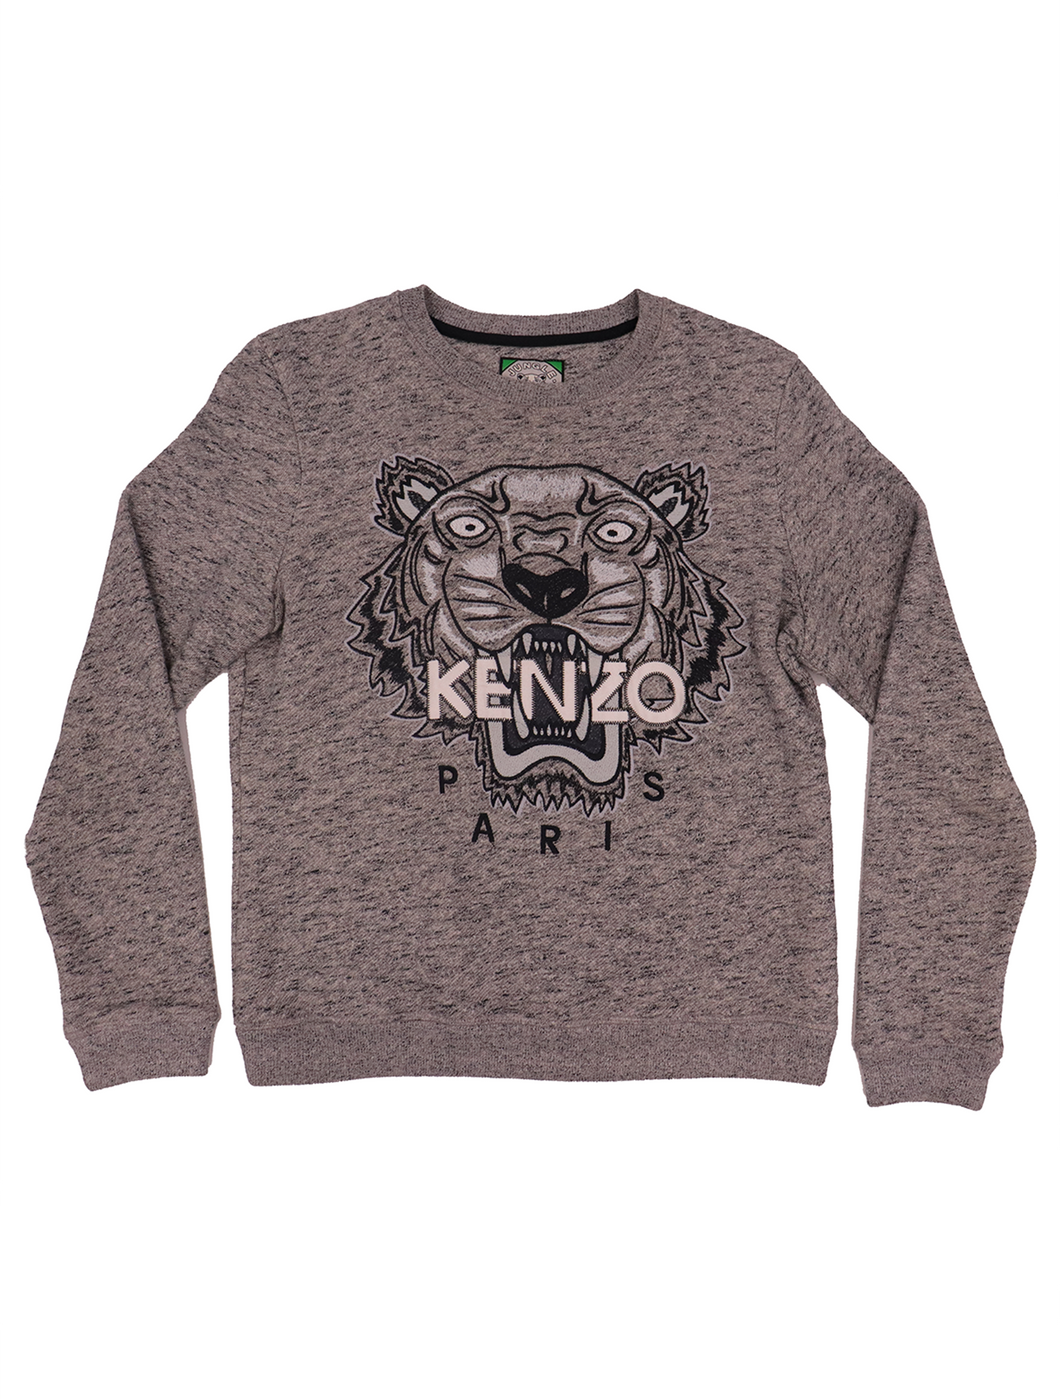 Kenzo Paris Gray Sweatshirt